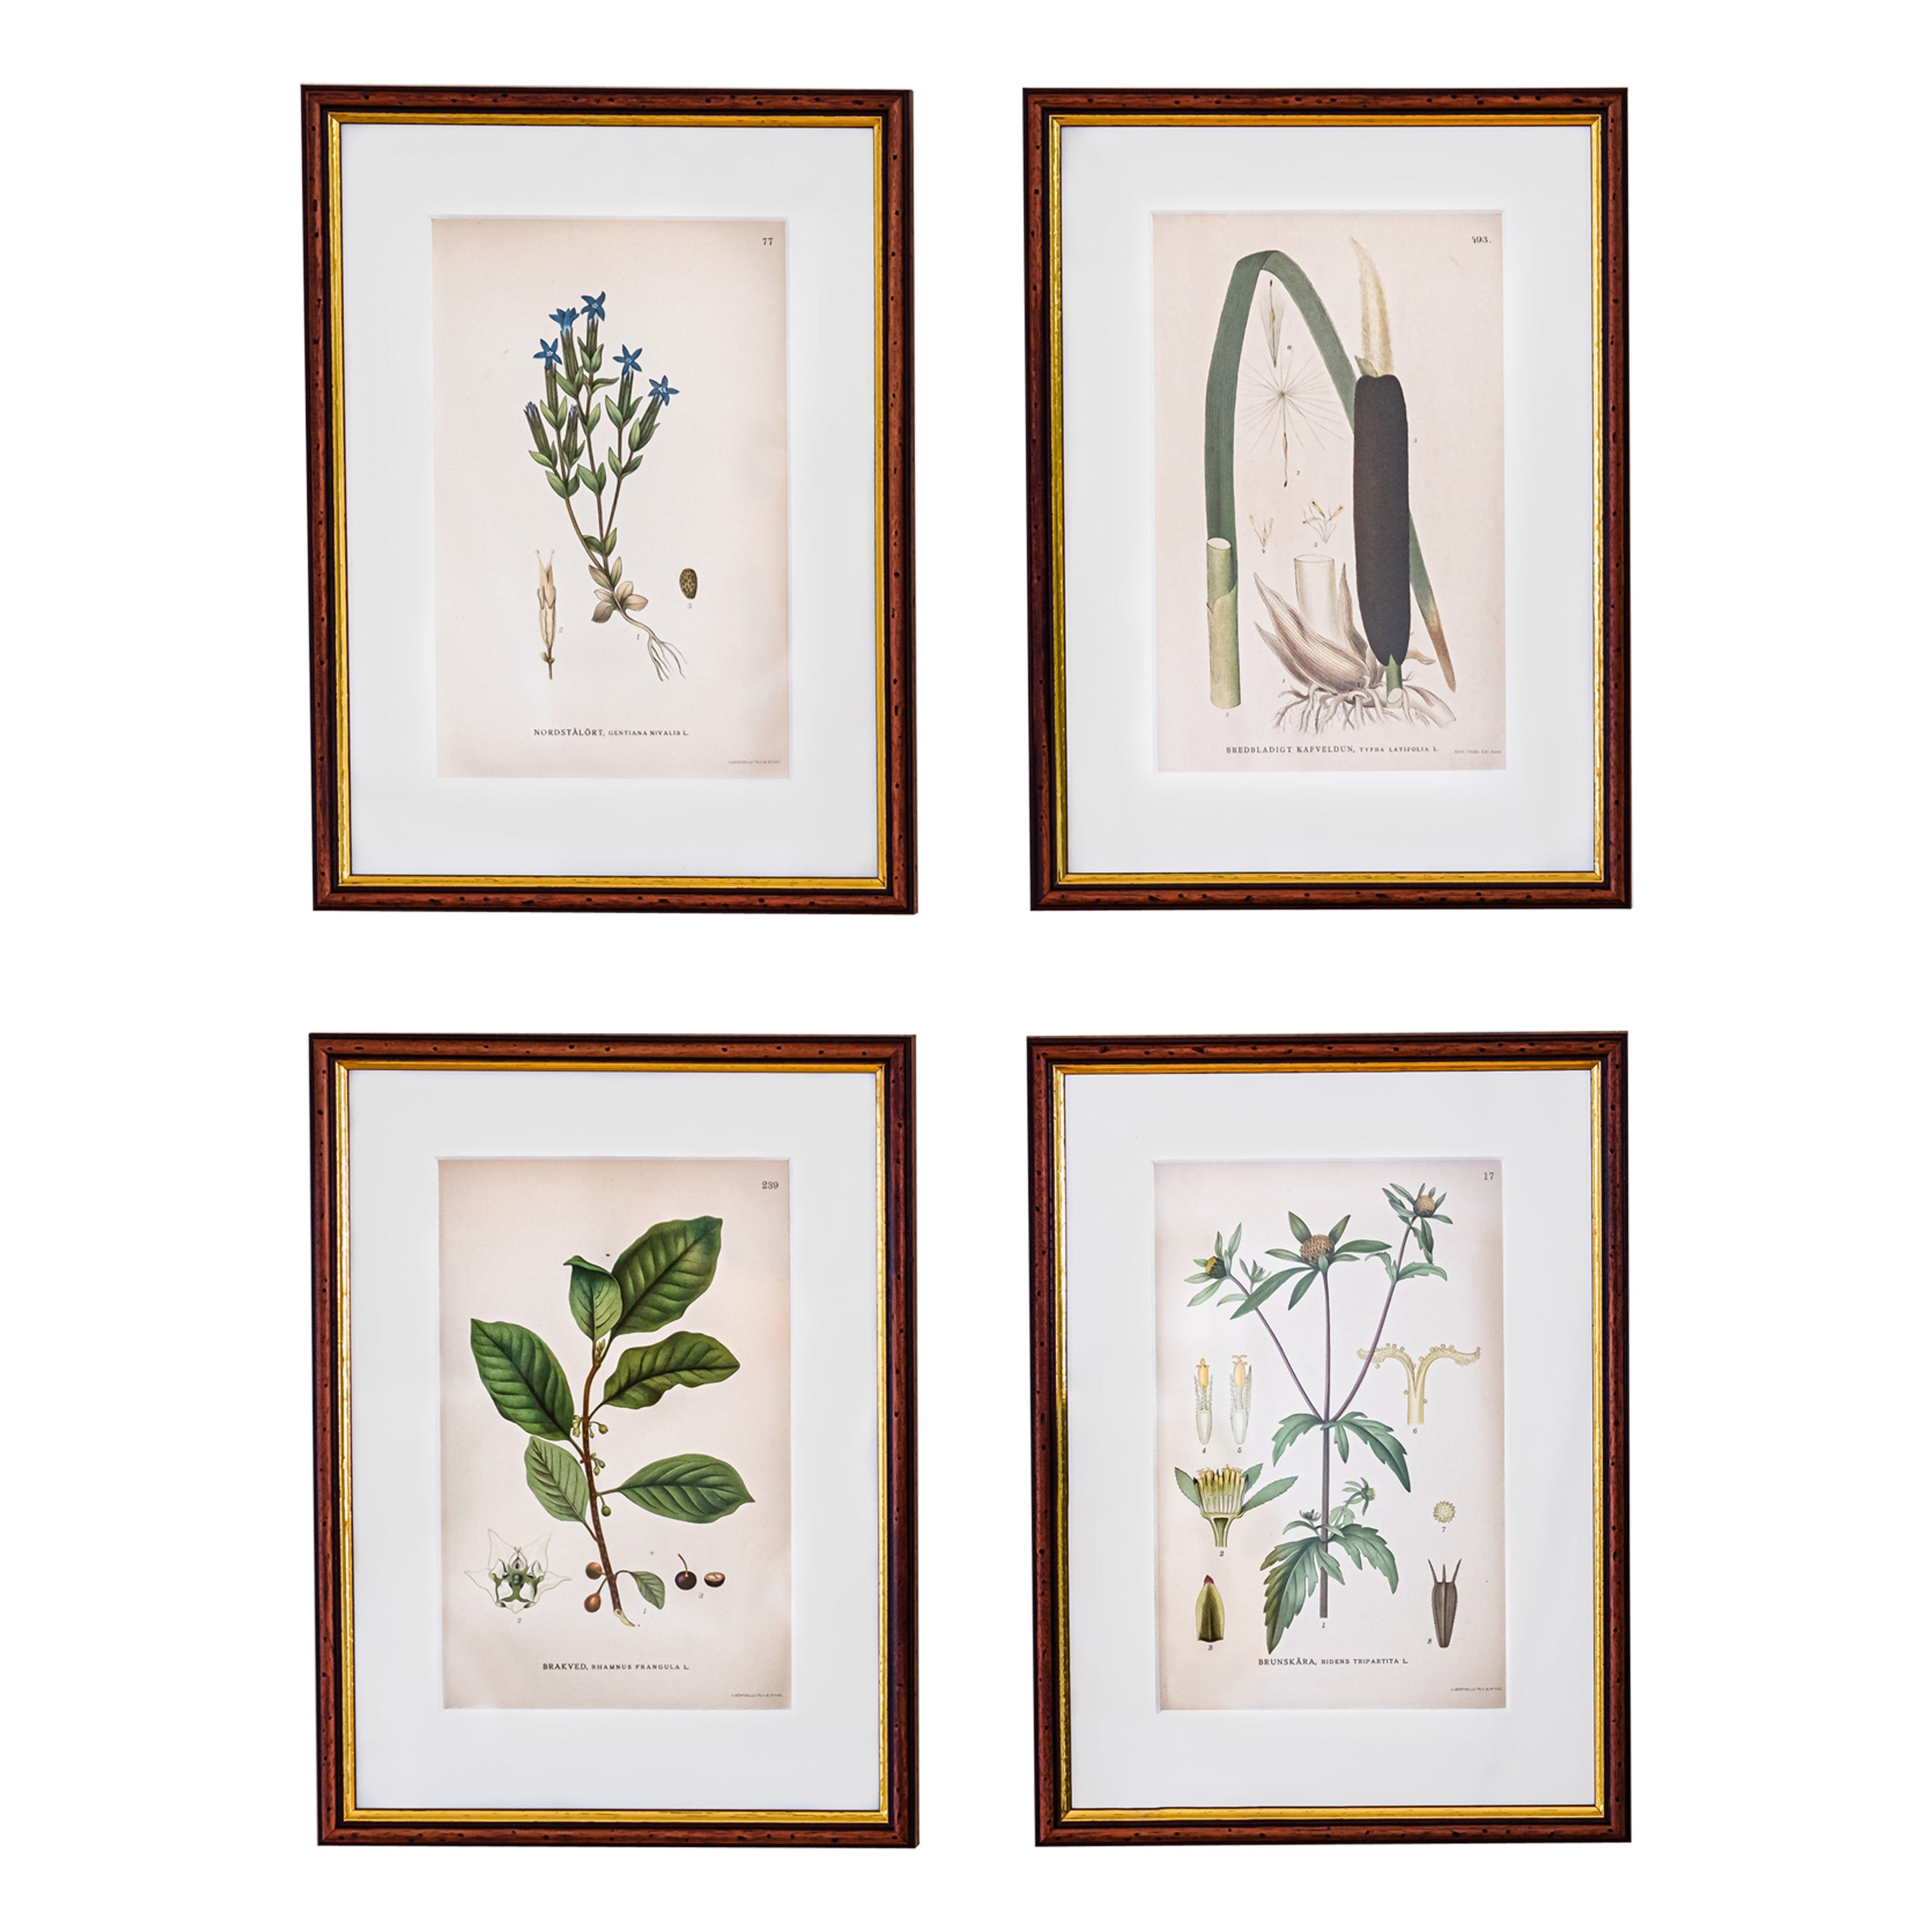 4 botanical illustrations from ‘Bilder ur Nordens Flora’ by C. A. Lindman.